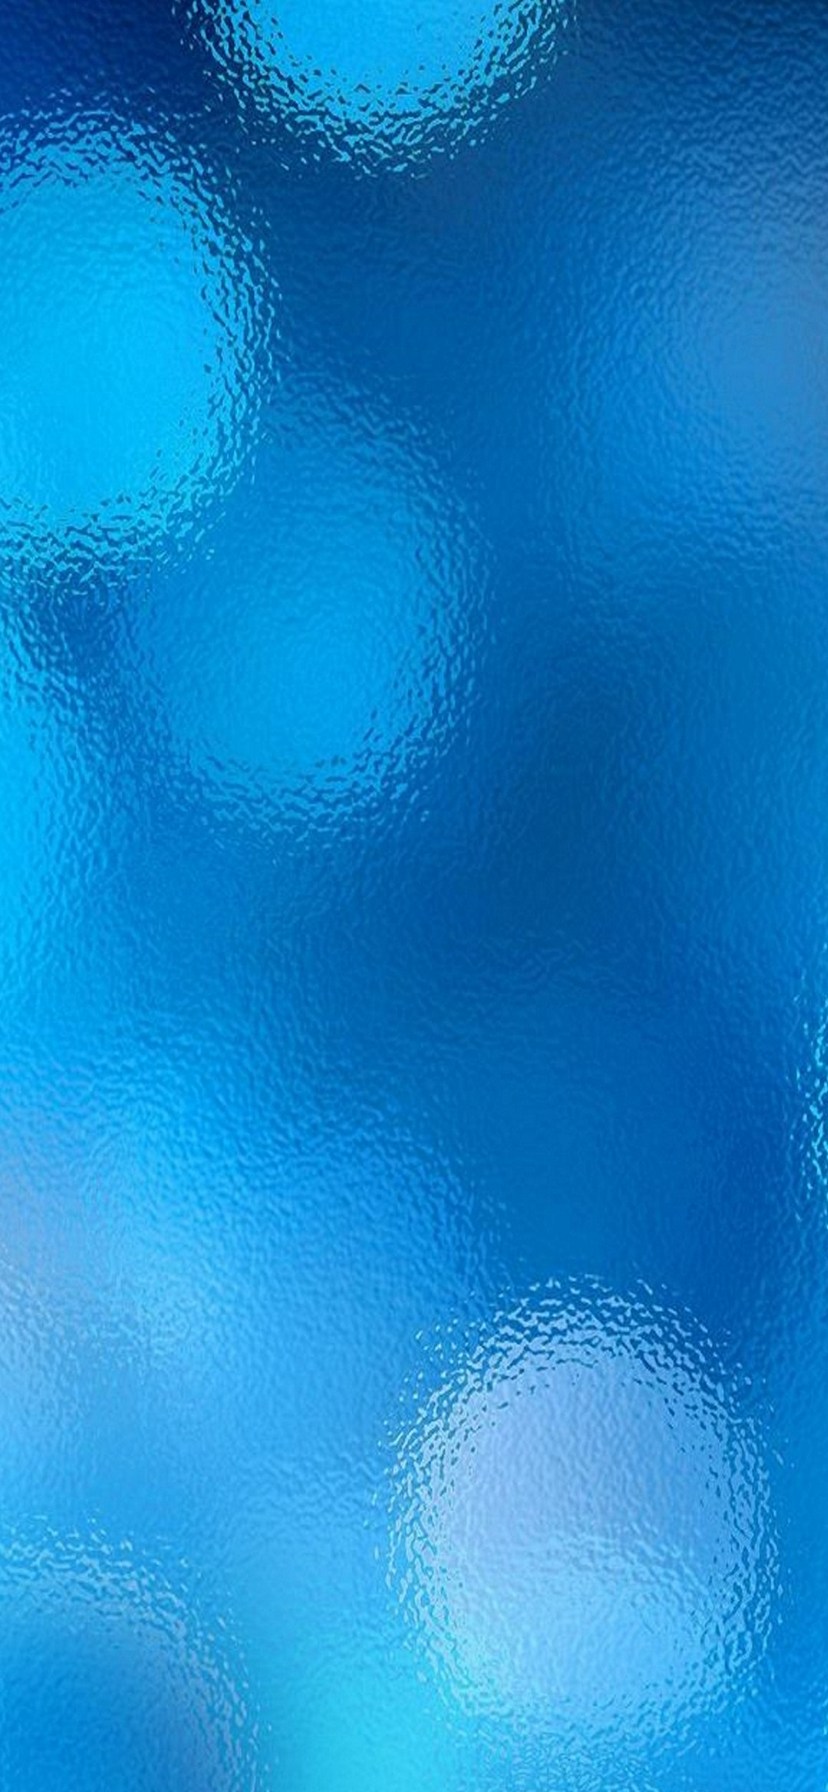 シリーズ 意識 スリム 壁紙 青い Parbiomagneticomadrid Net